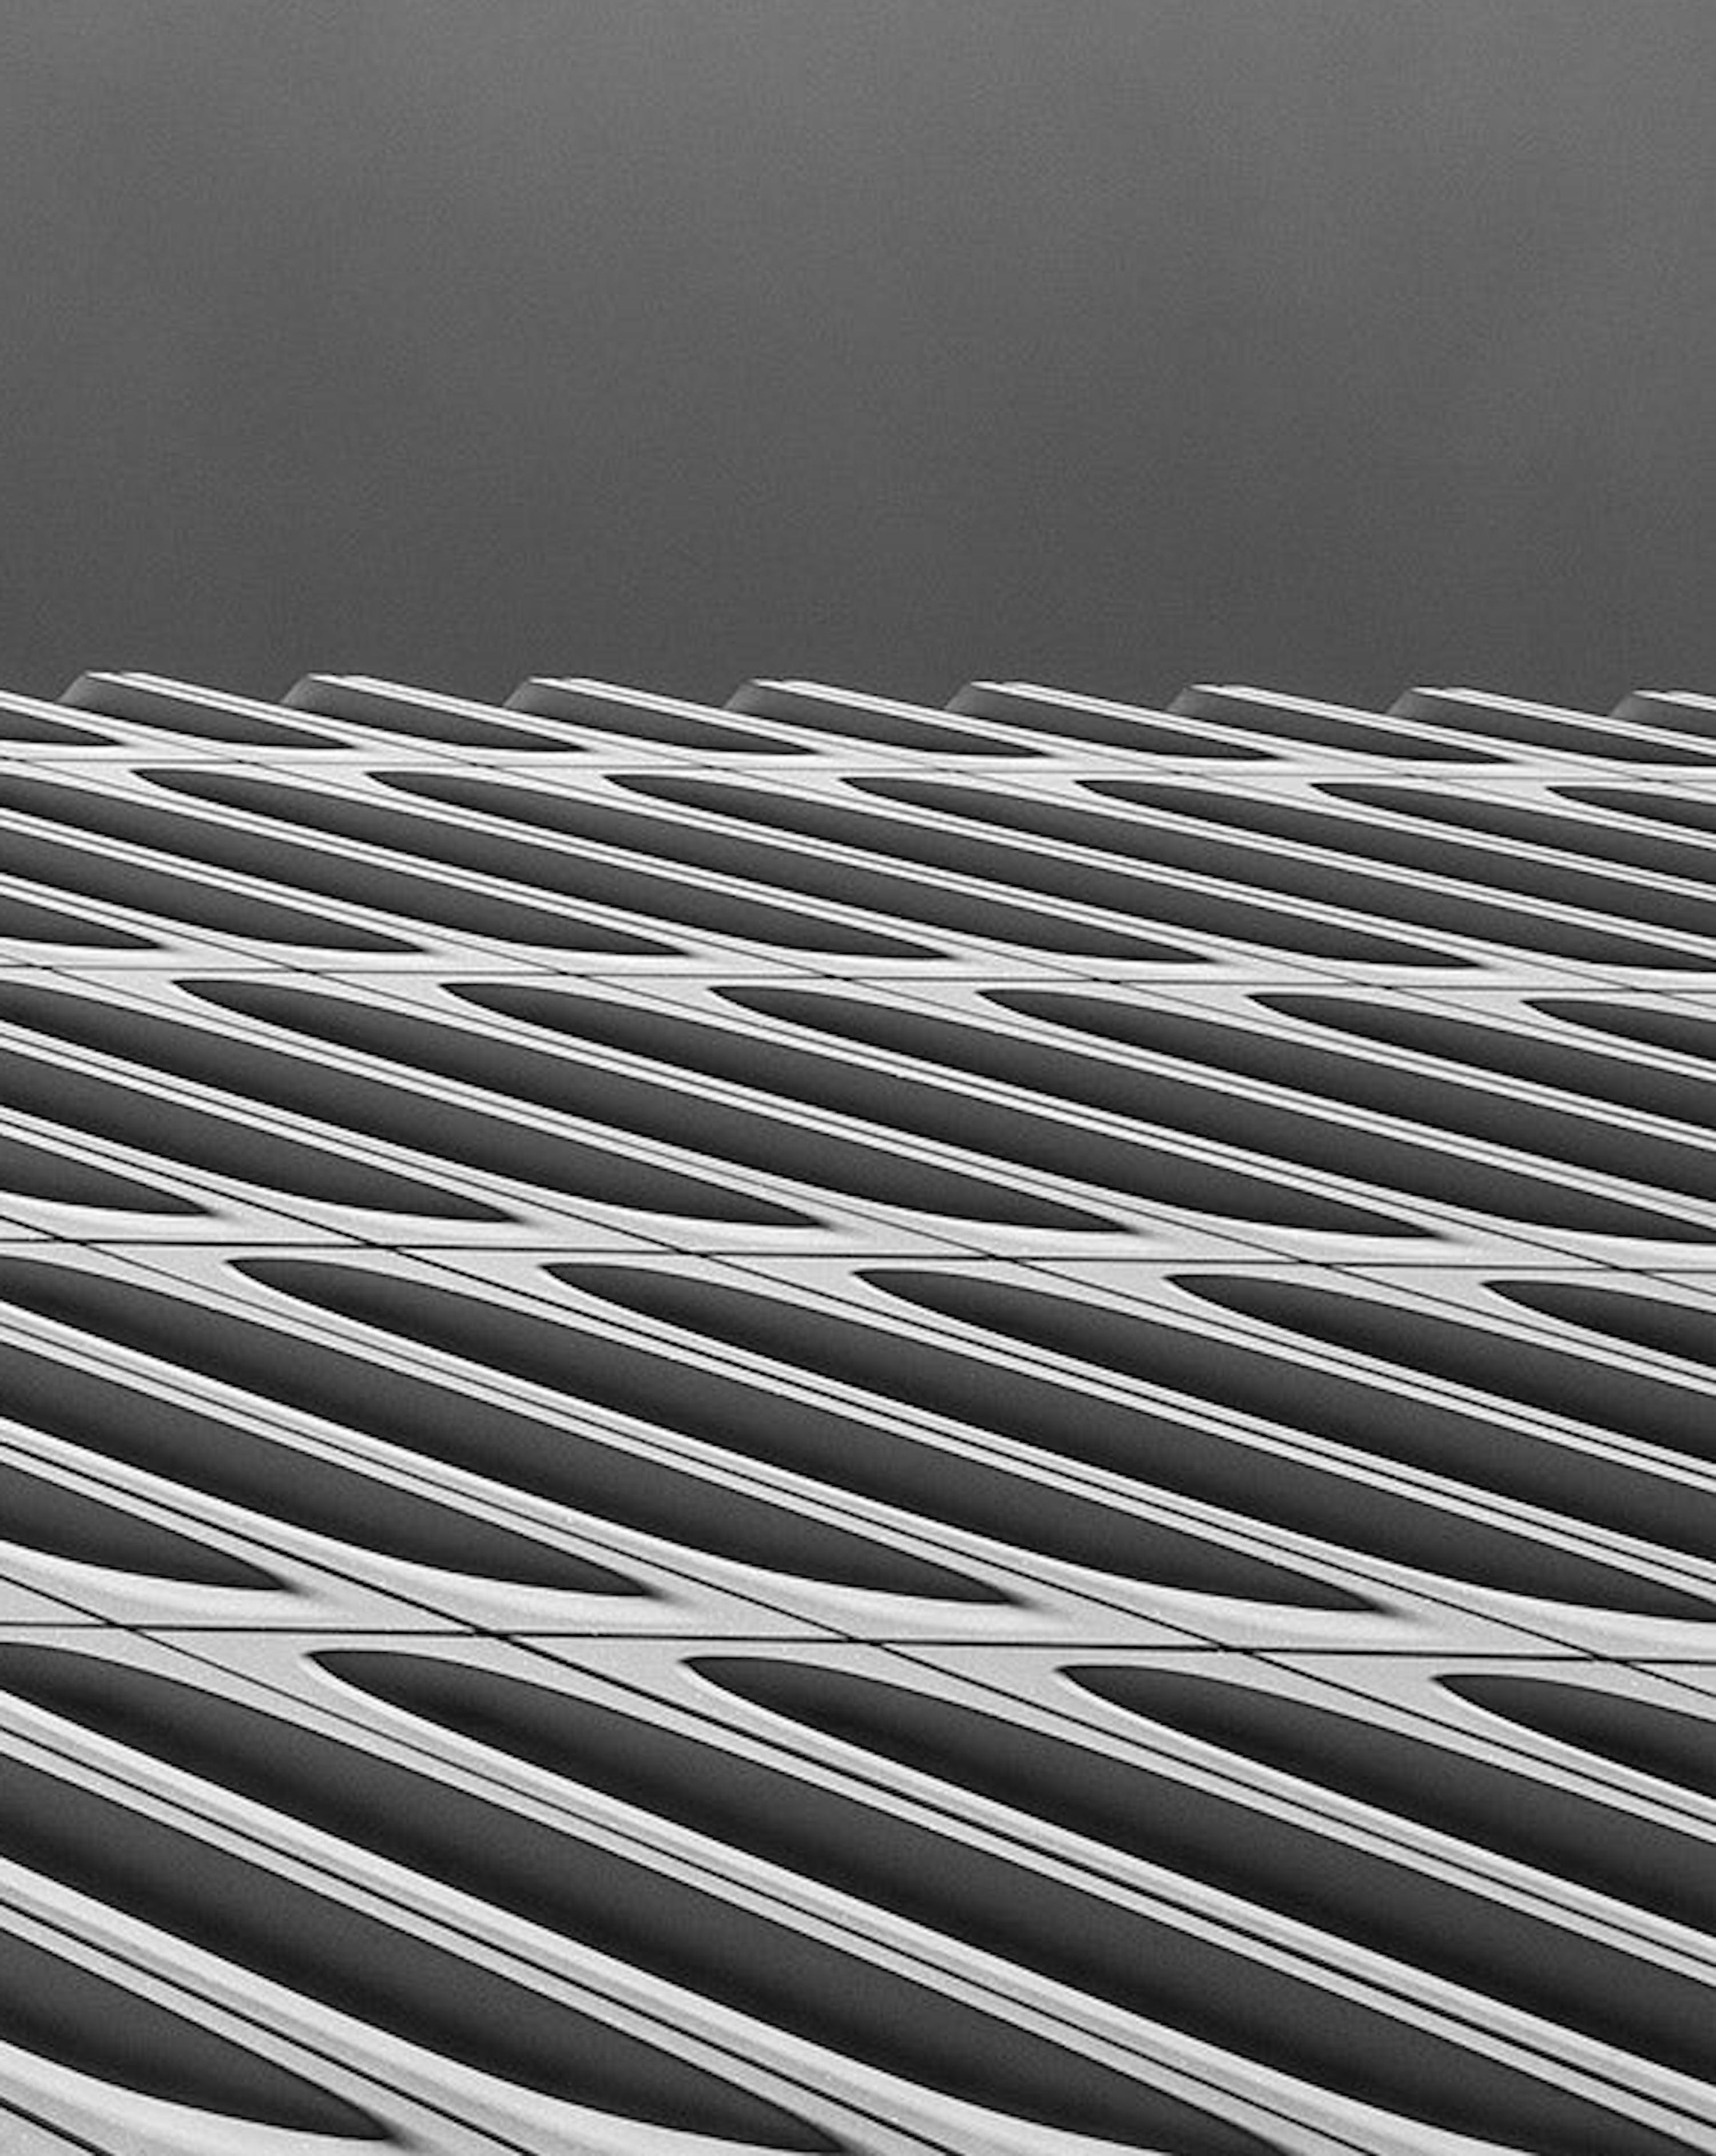 Versus. Architektur-Landschaftsfotografie in Schwarz-Weiß in limitierter Auflage (Zeitgenössisch), Photograph, von Juan Pablo Castro